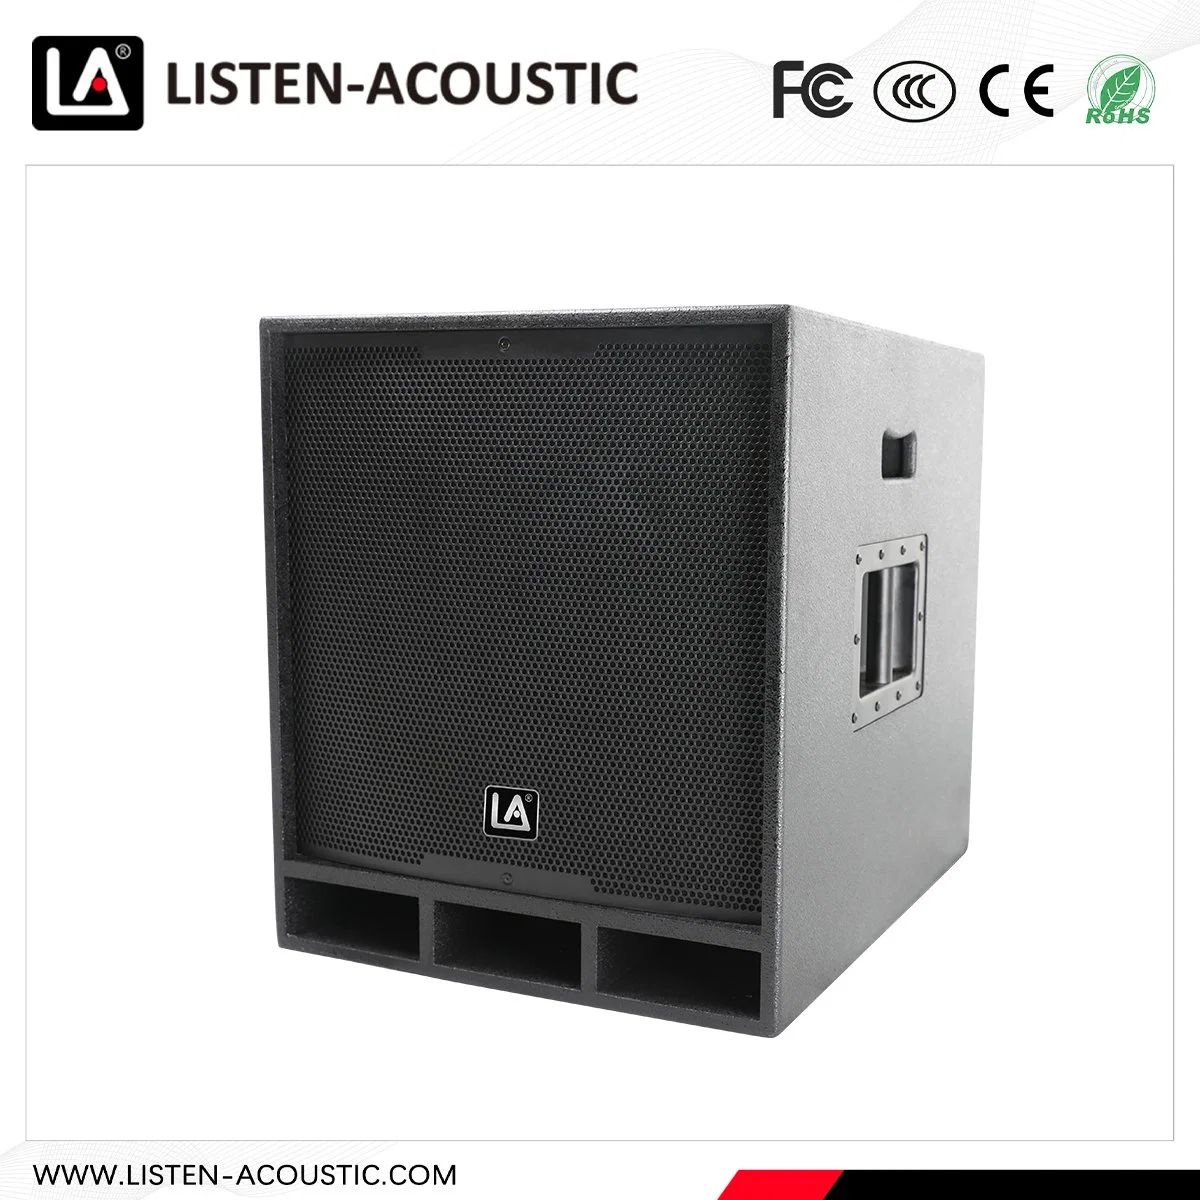 Matriz de Línea comercial Pro Audio amplificador de potencia la fabricación de altavoces para DJ sistema PA activo